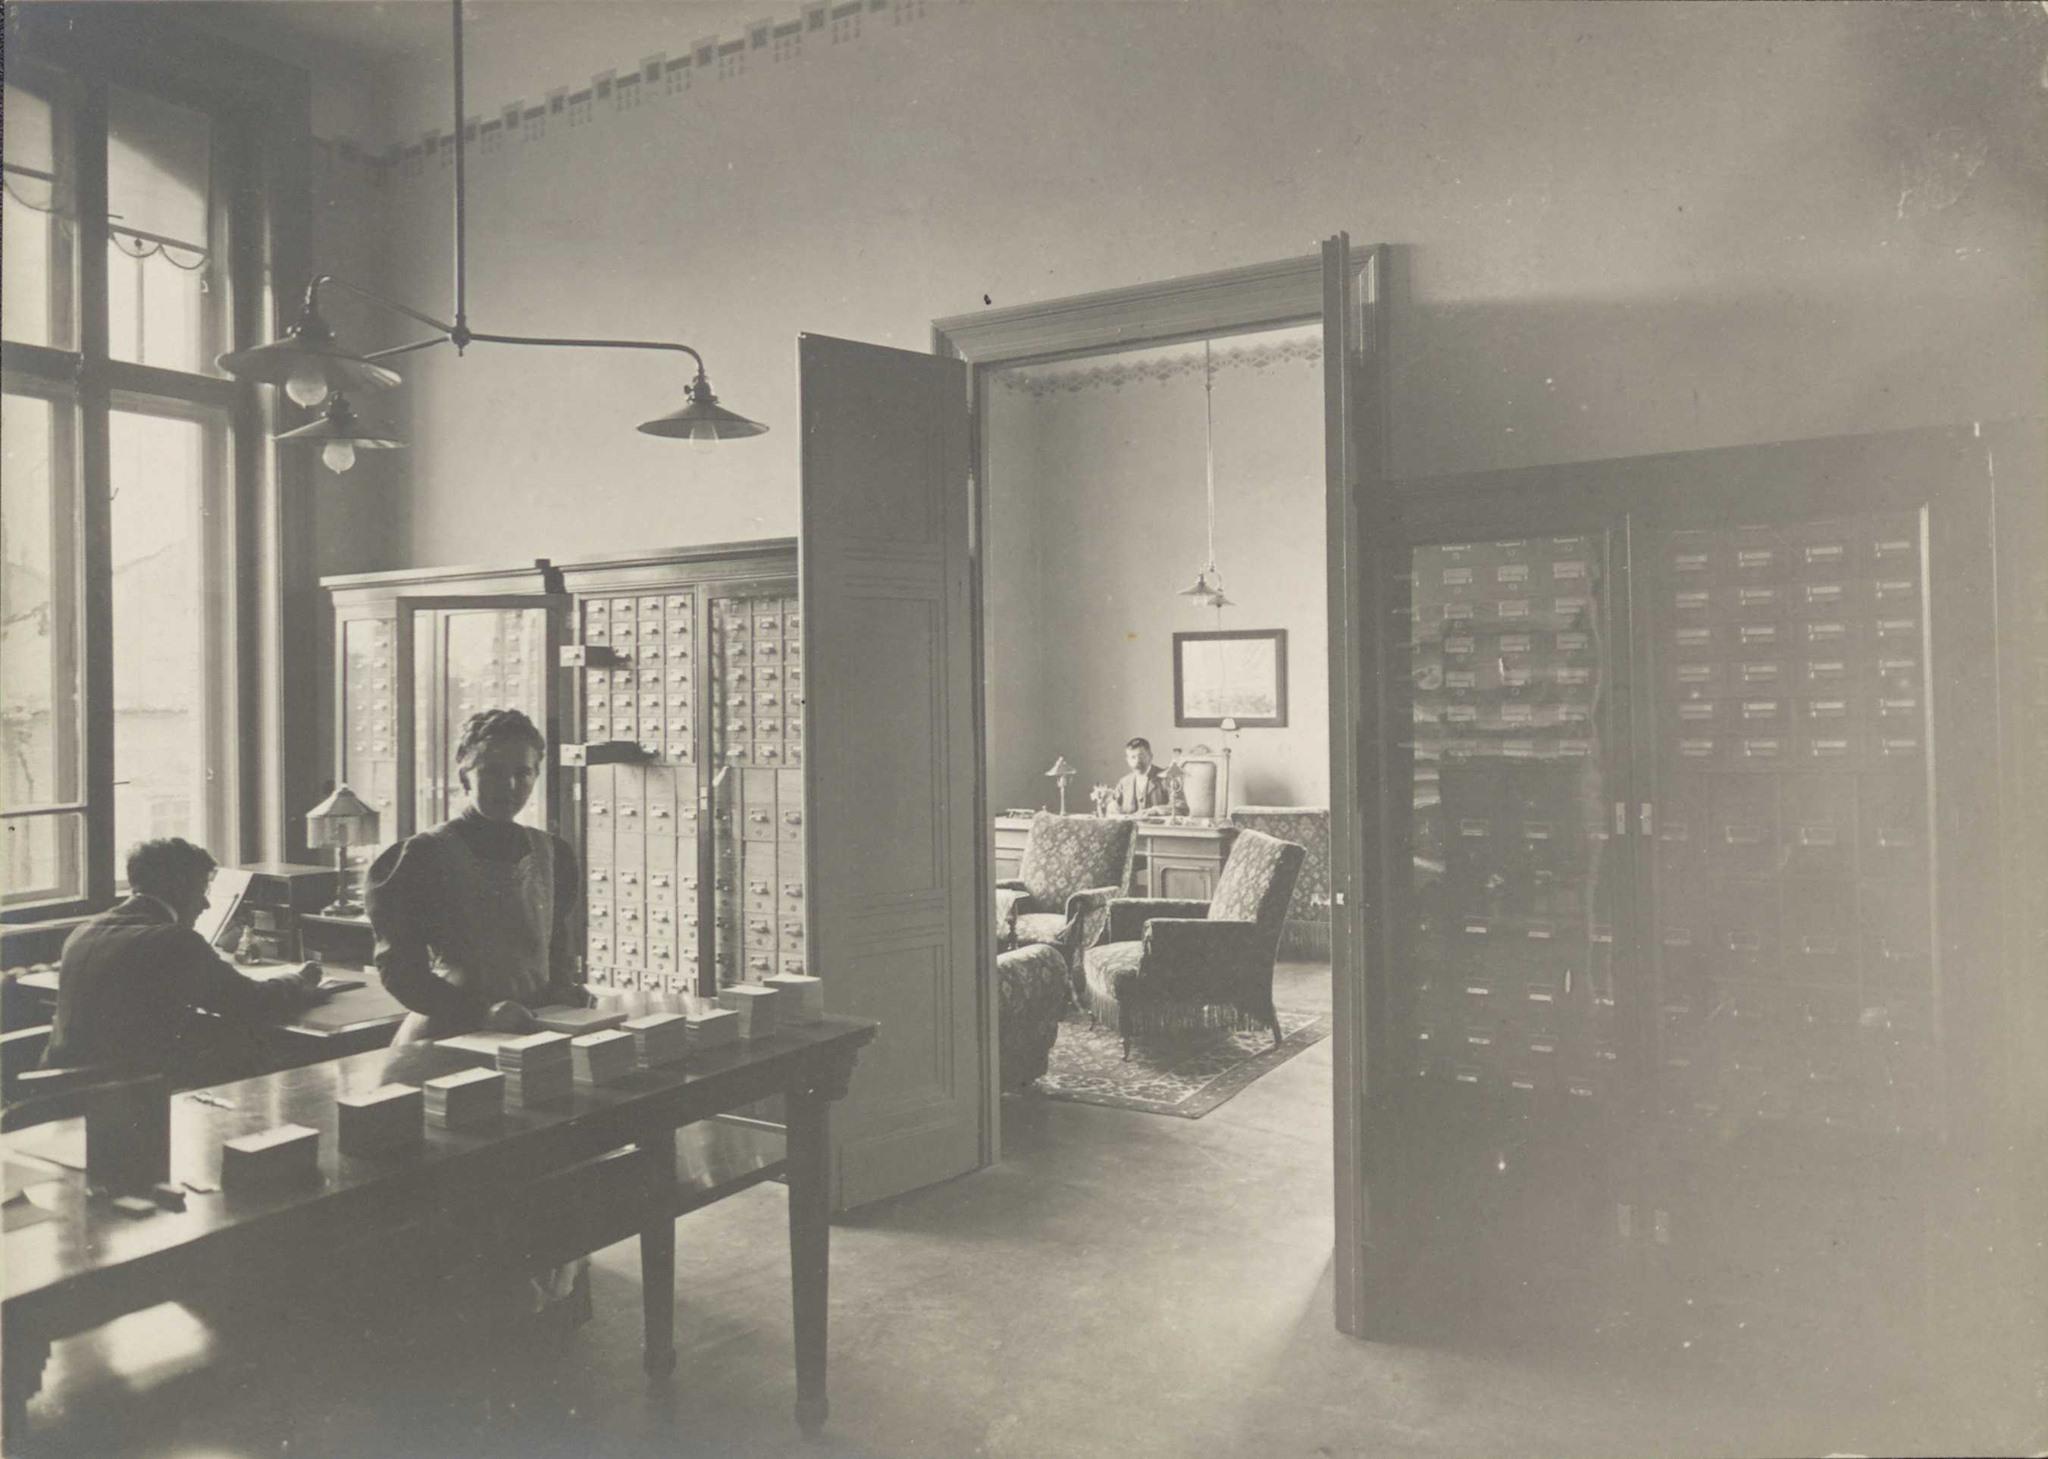 marking Distribution Independent Biblioteca Centrală Universitară „Lucian Blaga” din Cluj în 1910 - FOTO -  Ştiri de Cluj